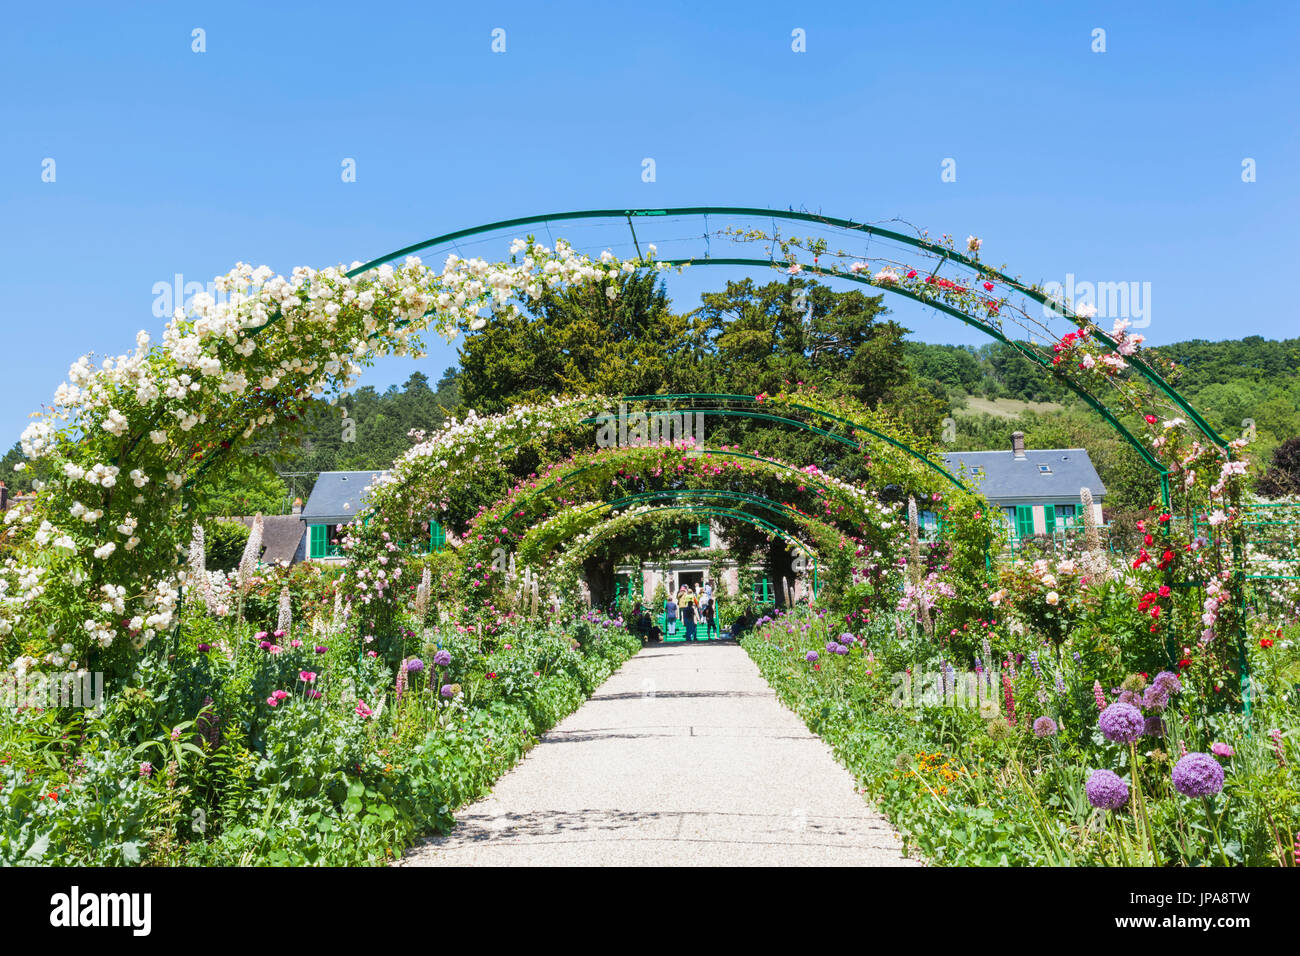 France, Normandie, Giverny, la maison et le jardin de Monet Banque D'Images